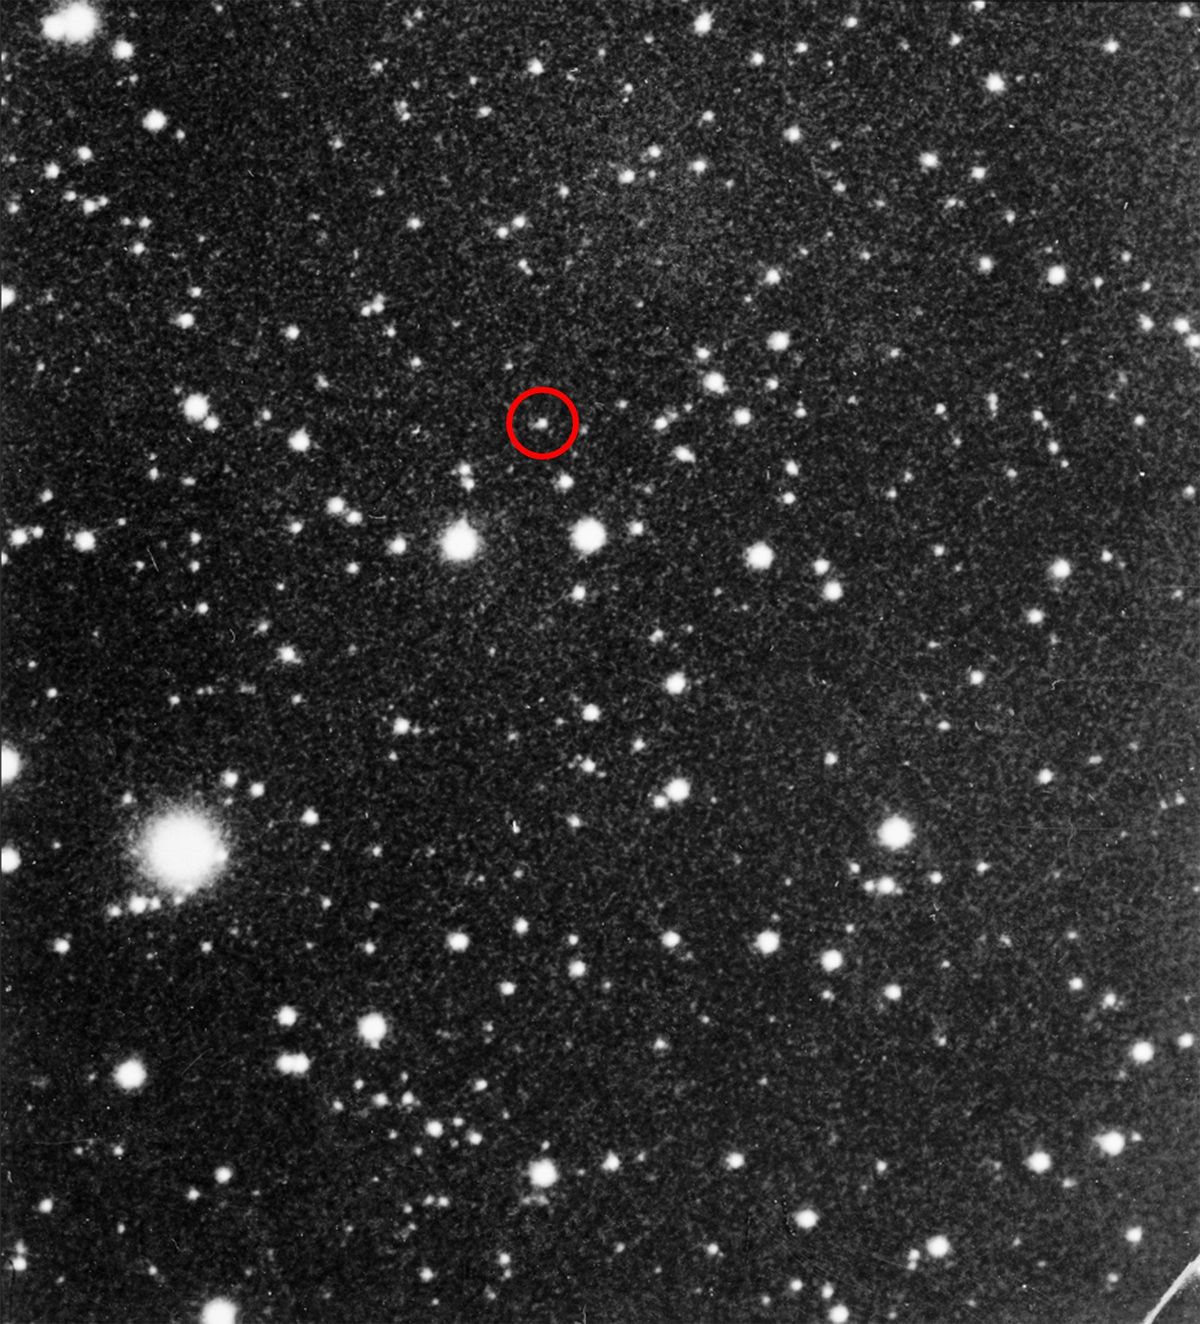 In 1930 ontdekte Clyde Tombaugh Pluto toen hij deze afbeelding Pluto is omcirkeld vergeleek met een afbeelding van zes dagen ervoor en het hem opviel dat dit lichte vlekje was verplaatst